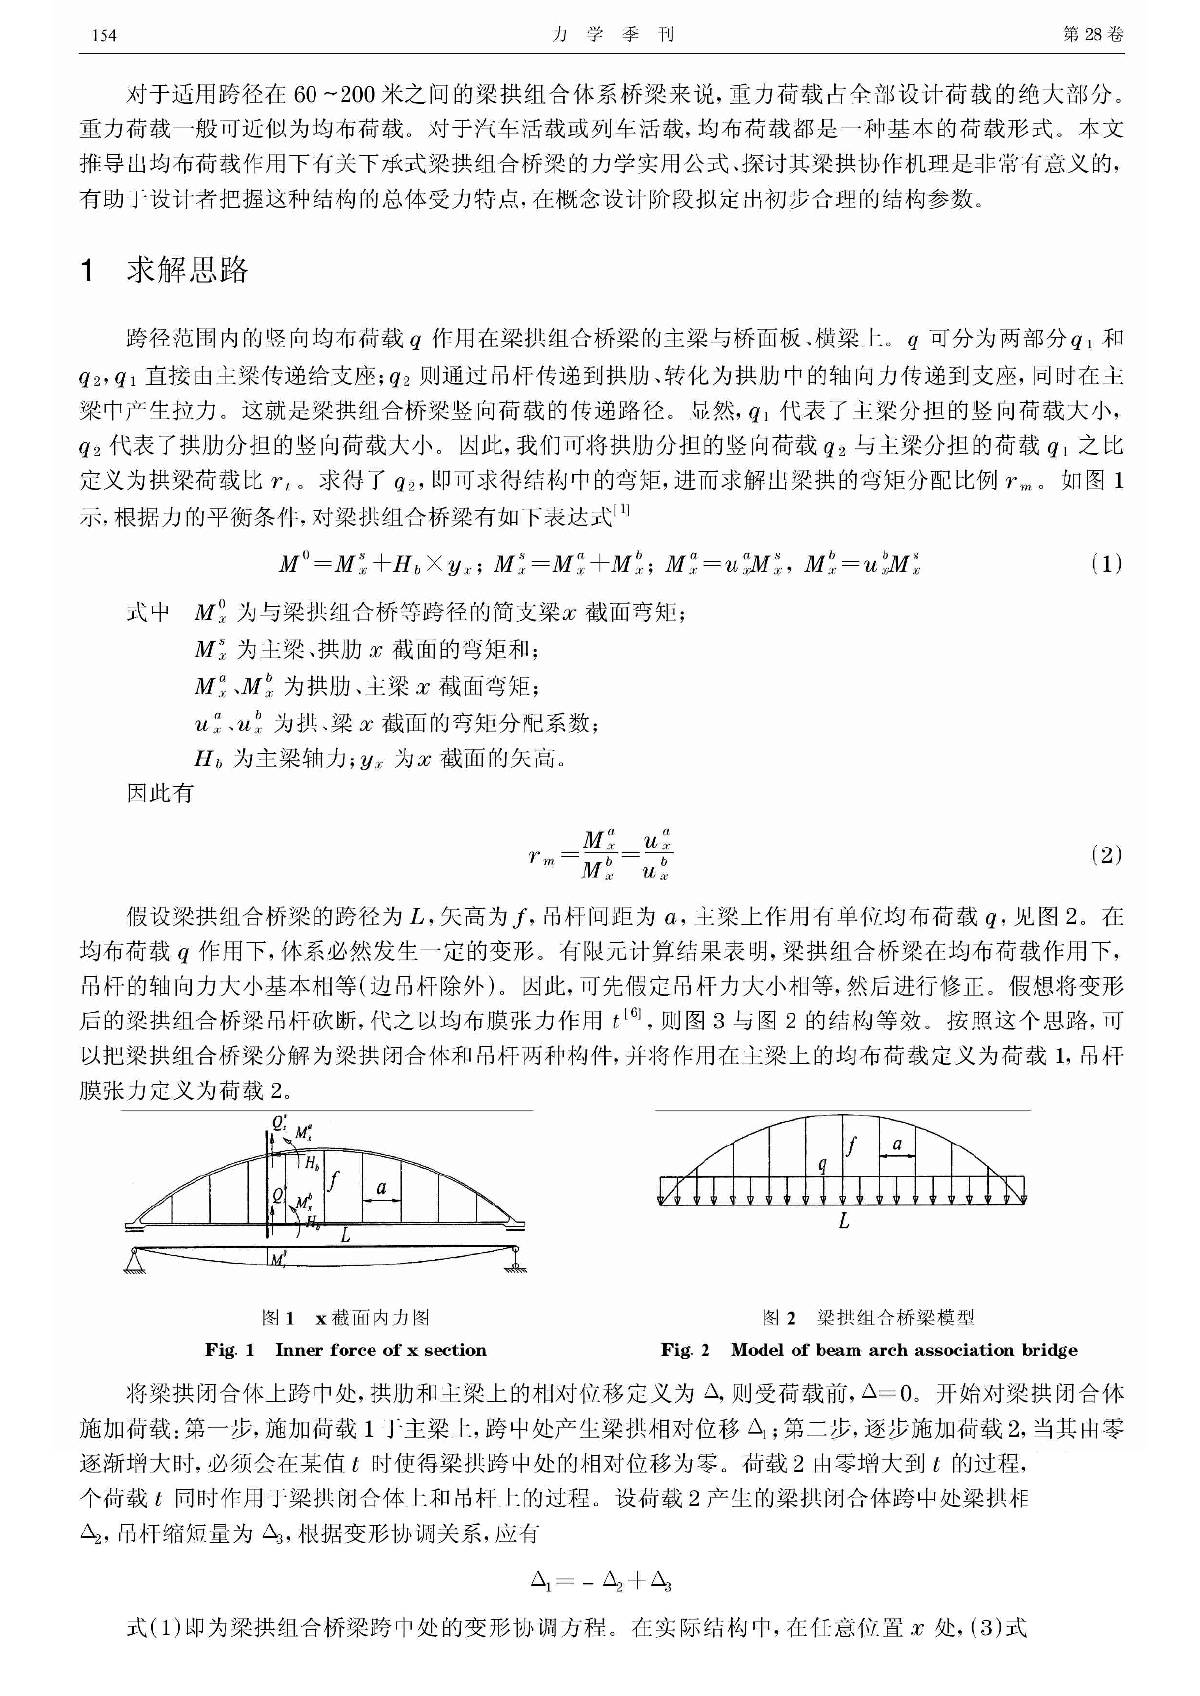 下承式梁拱组合桥梁的梁拱协作机理研究-图二